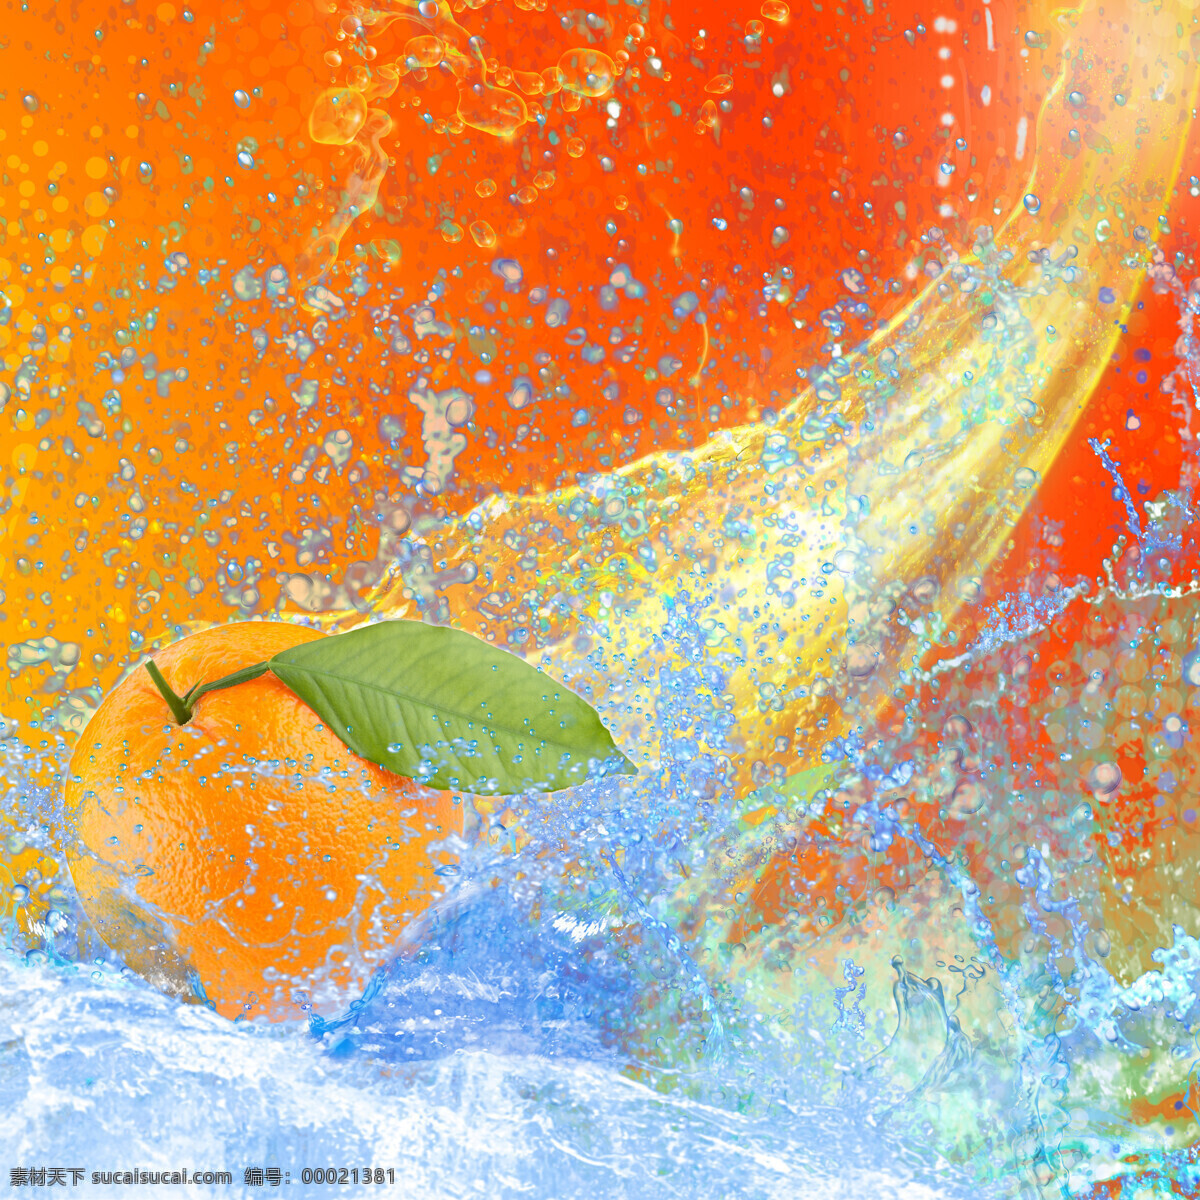 动感 水球 柚子 水果 水花 动感水珠 水滴 新鲜 绿叶 果实 特写 摄影图 高清图片 蔬菜图片 餐饮美食